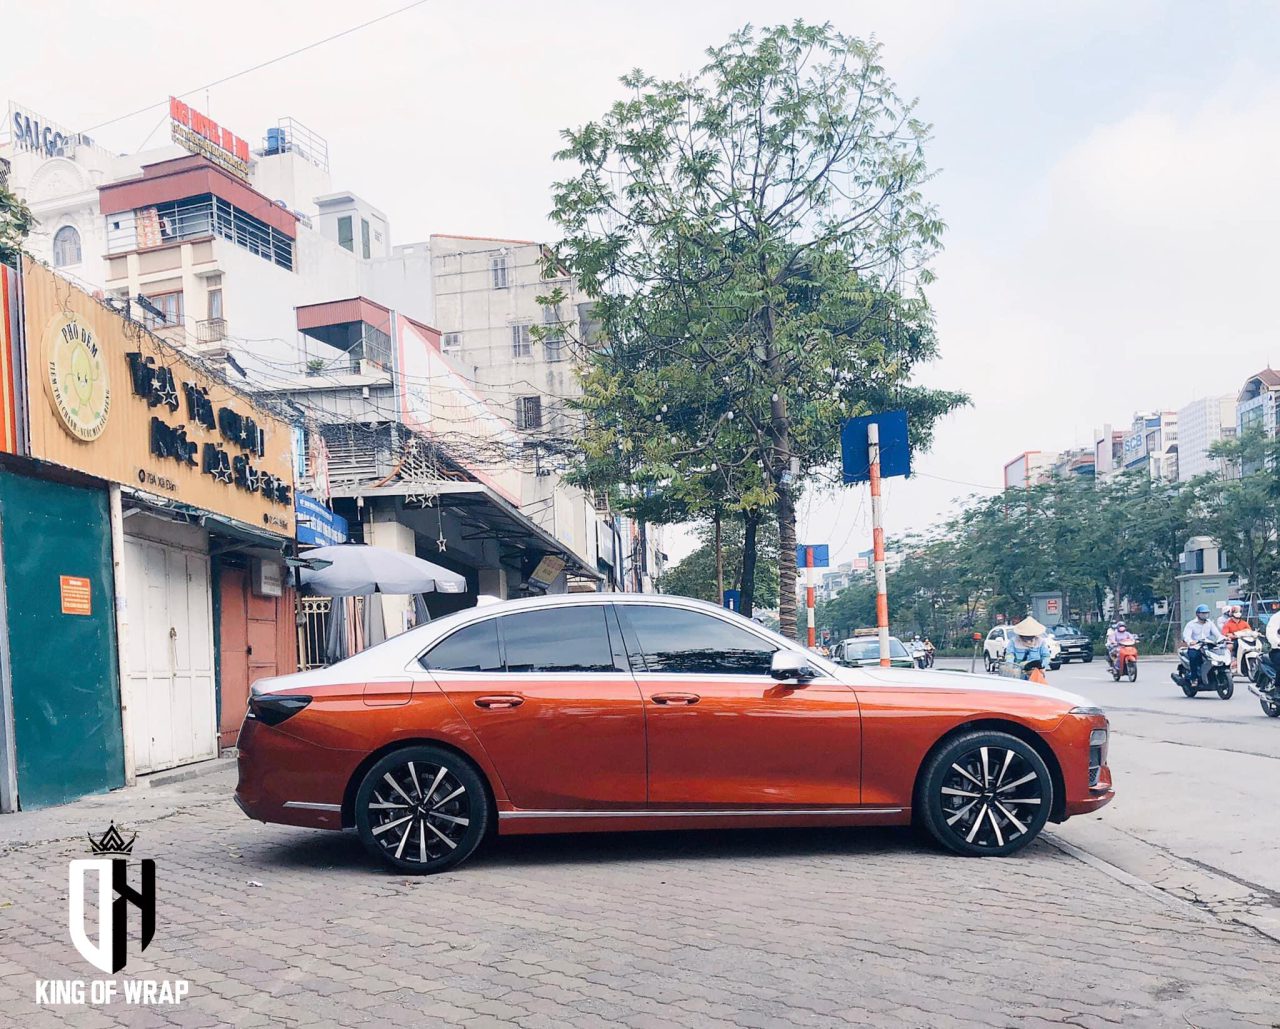 Dán decal xe oto tại Hà Nội style Maybach VinFast đẹp giá rẻ | Kingwrap